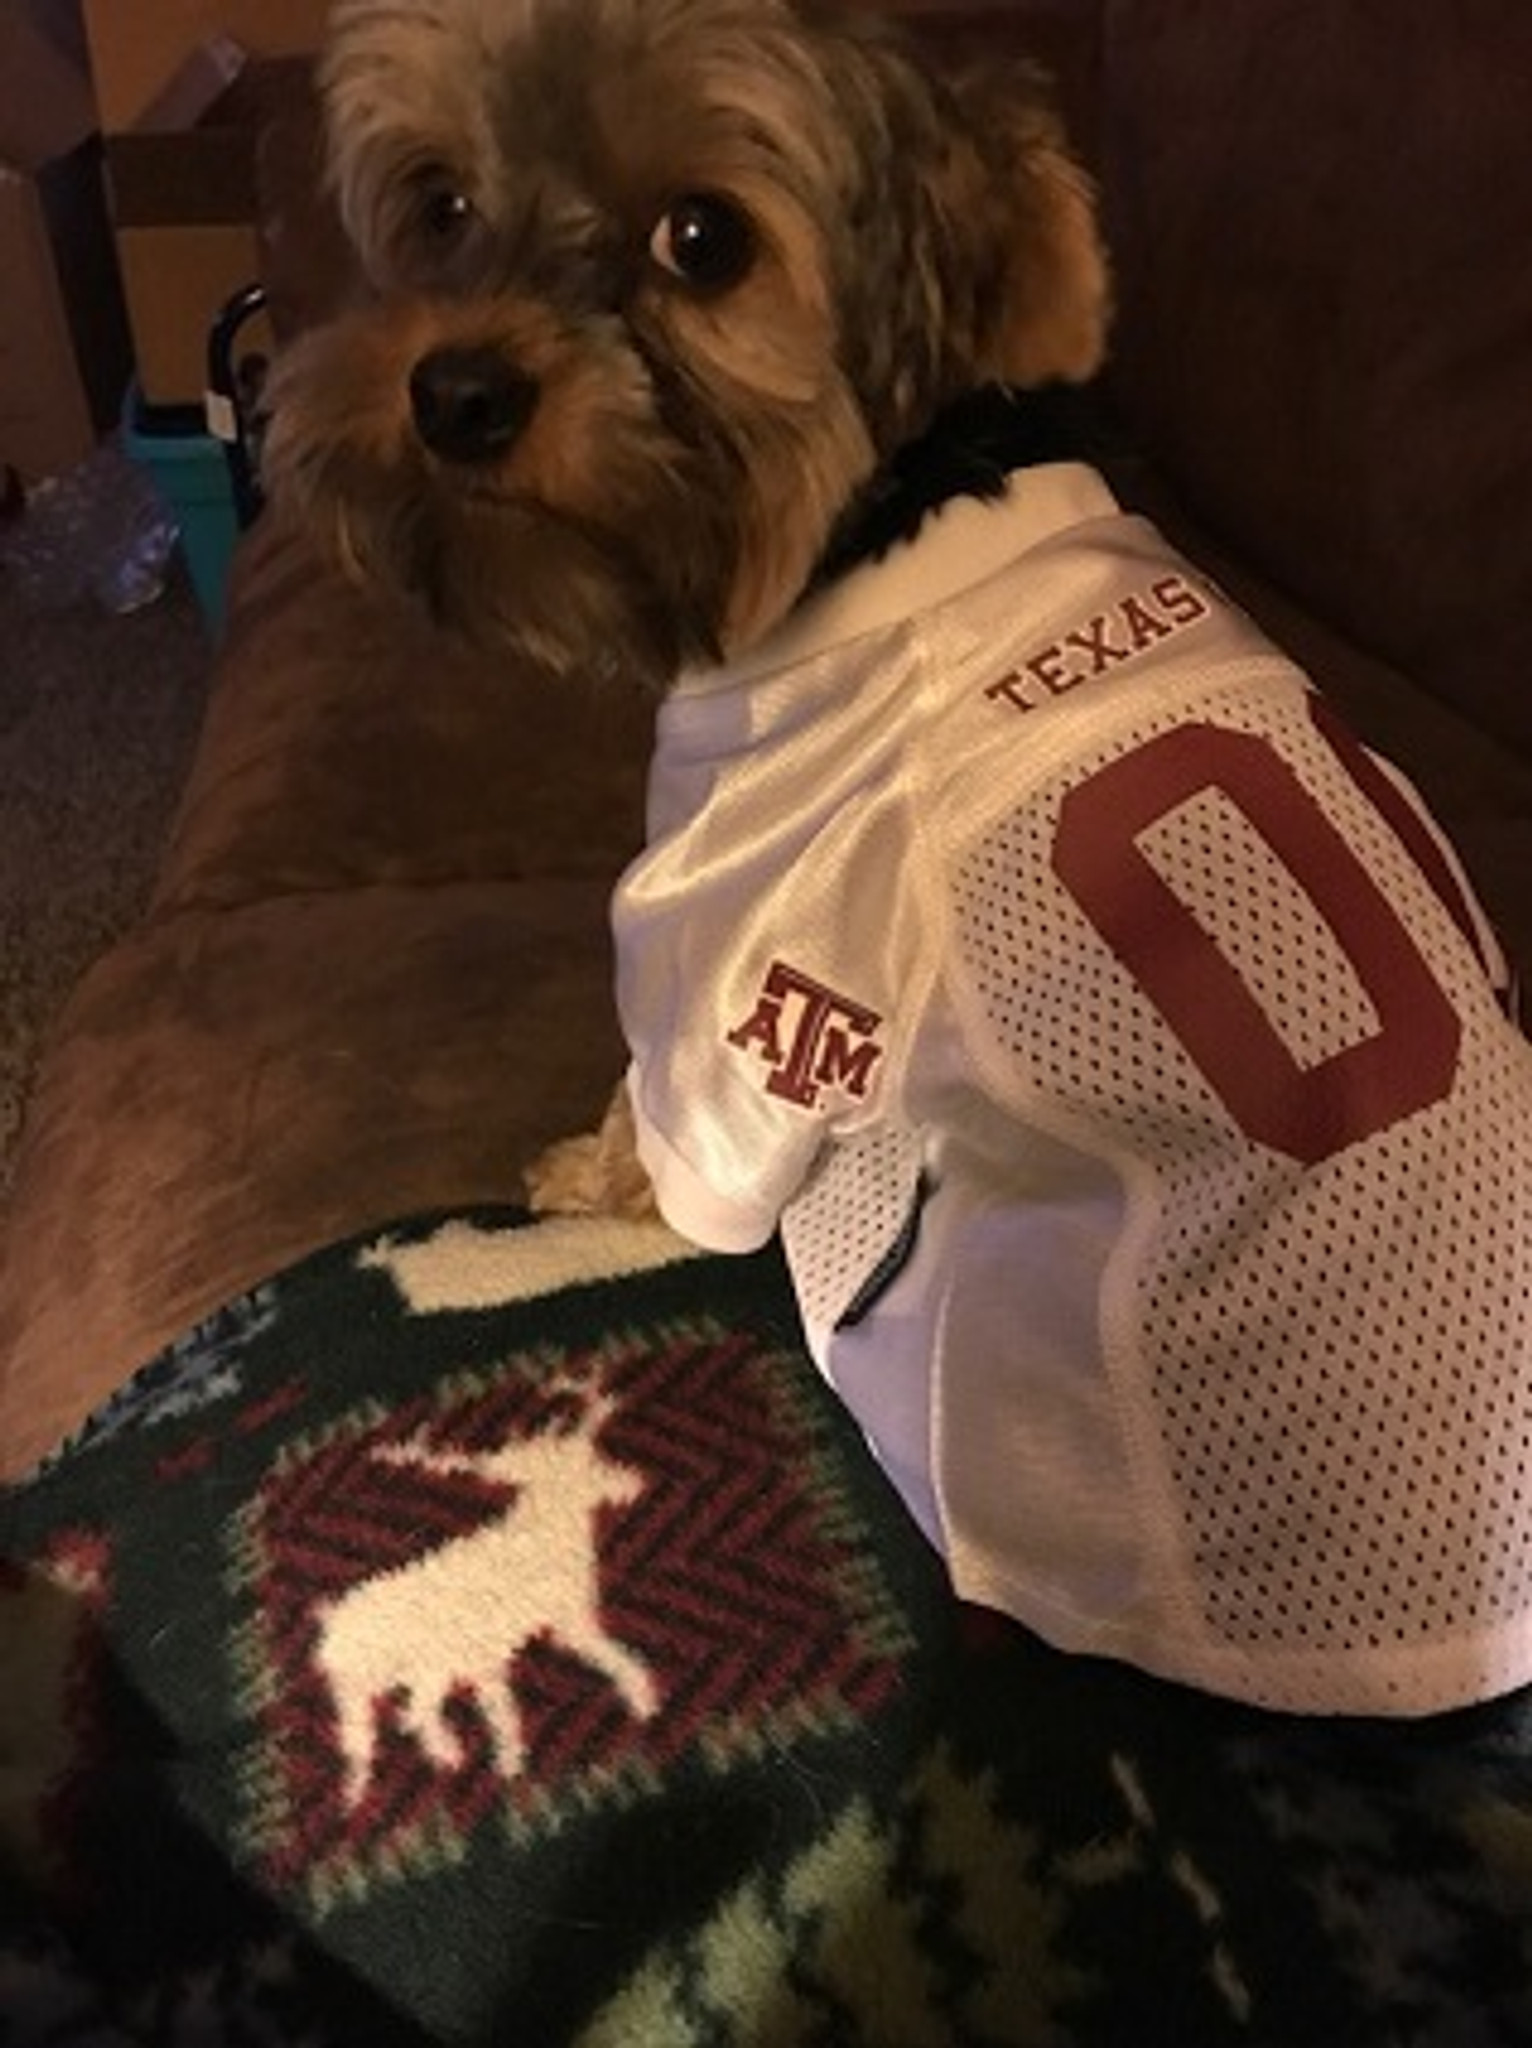 a&m dog jersey